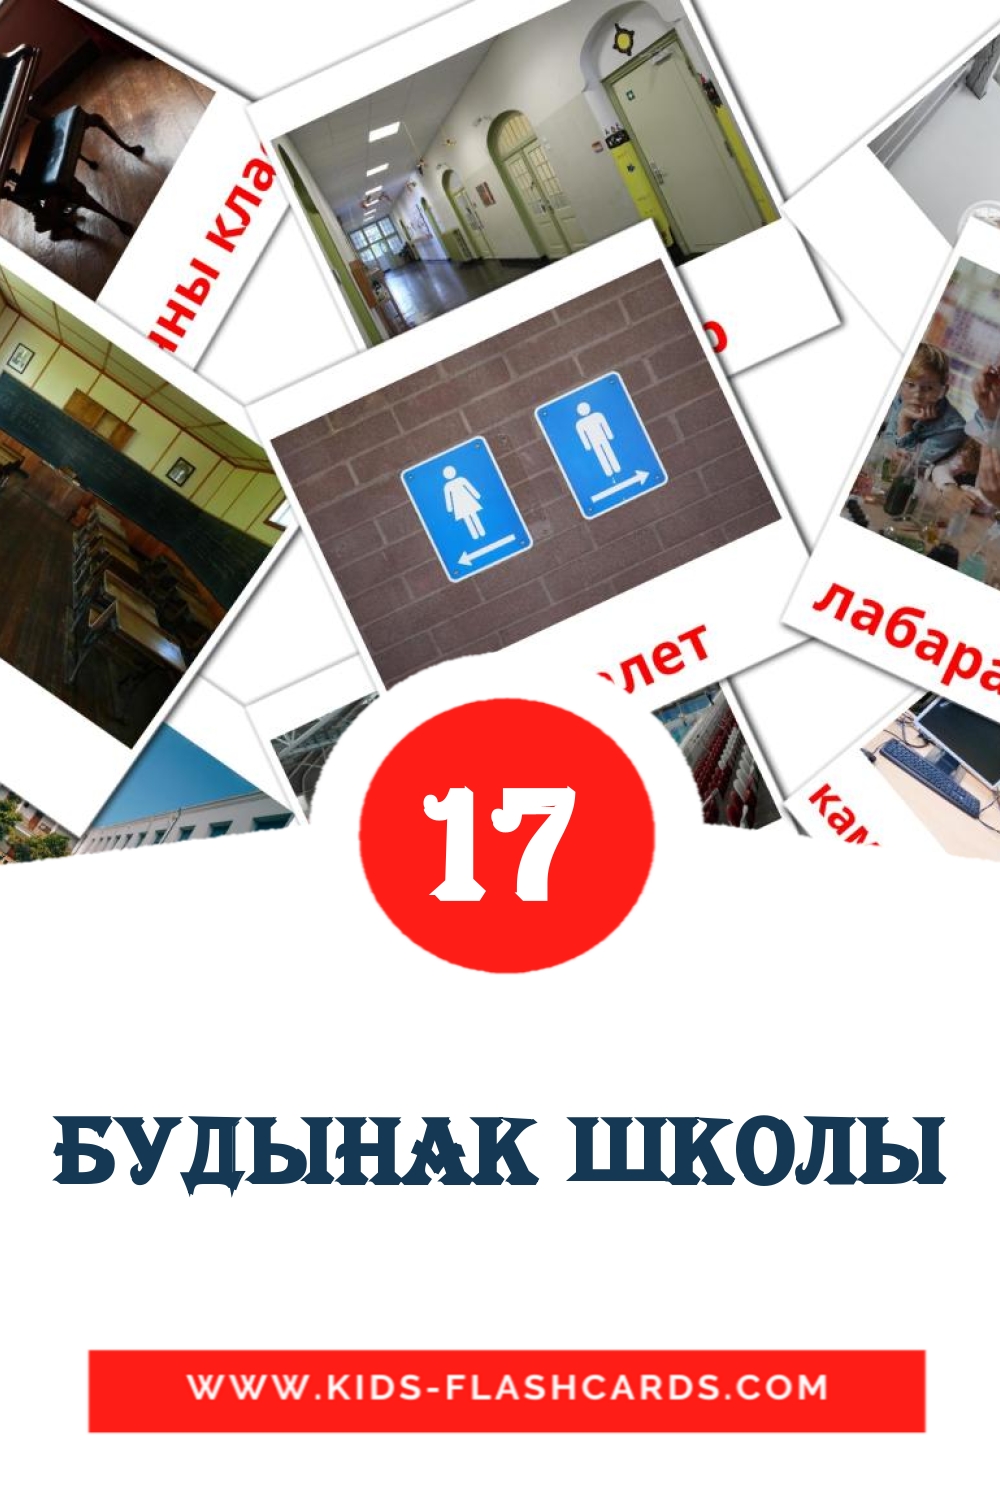 17 Будынак школы Bildkarten für den Kindergarten auf Weißrussisch